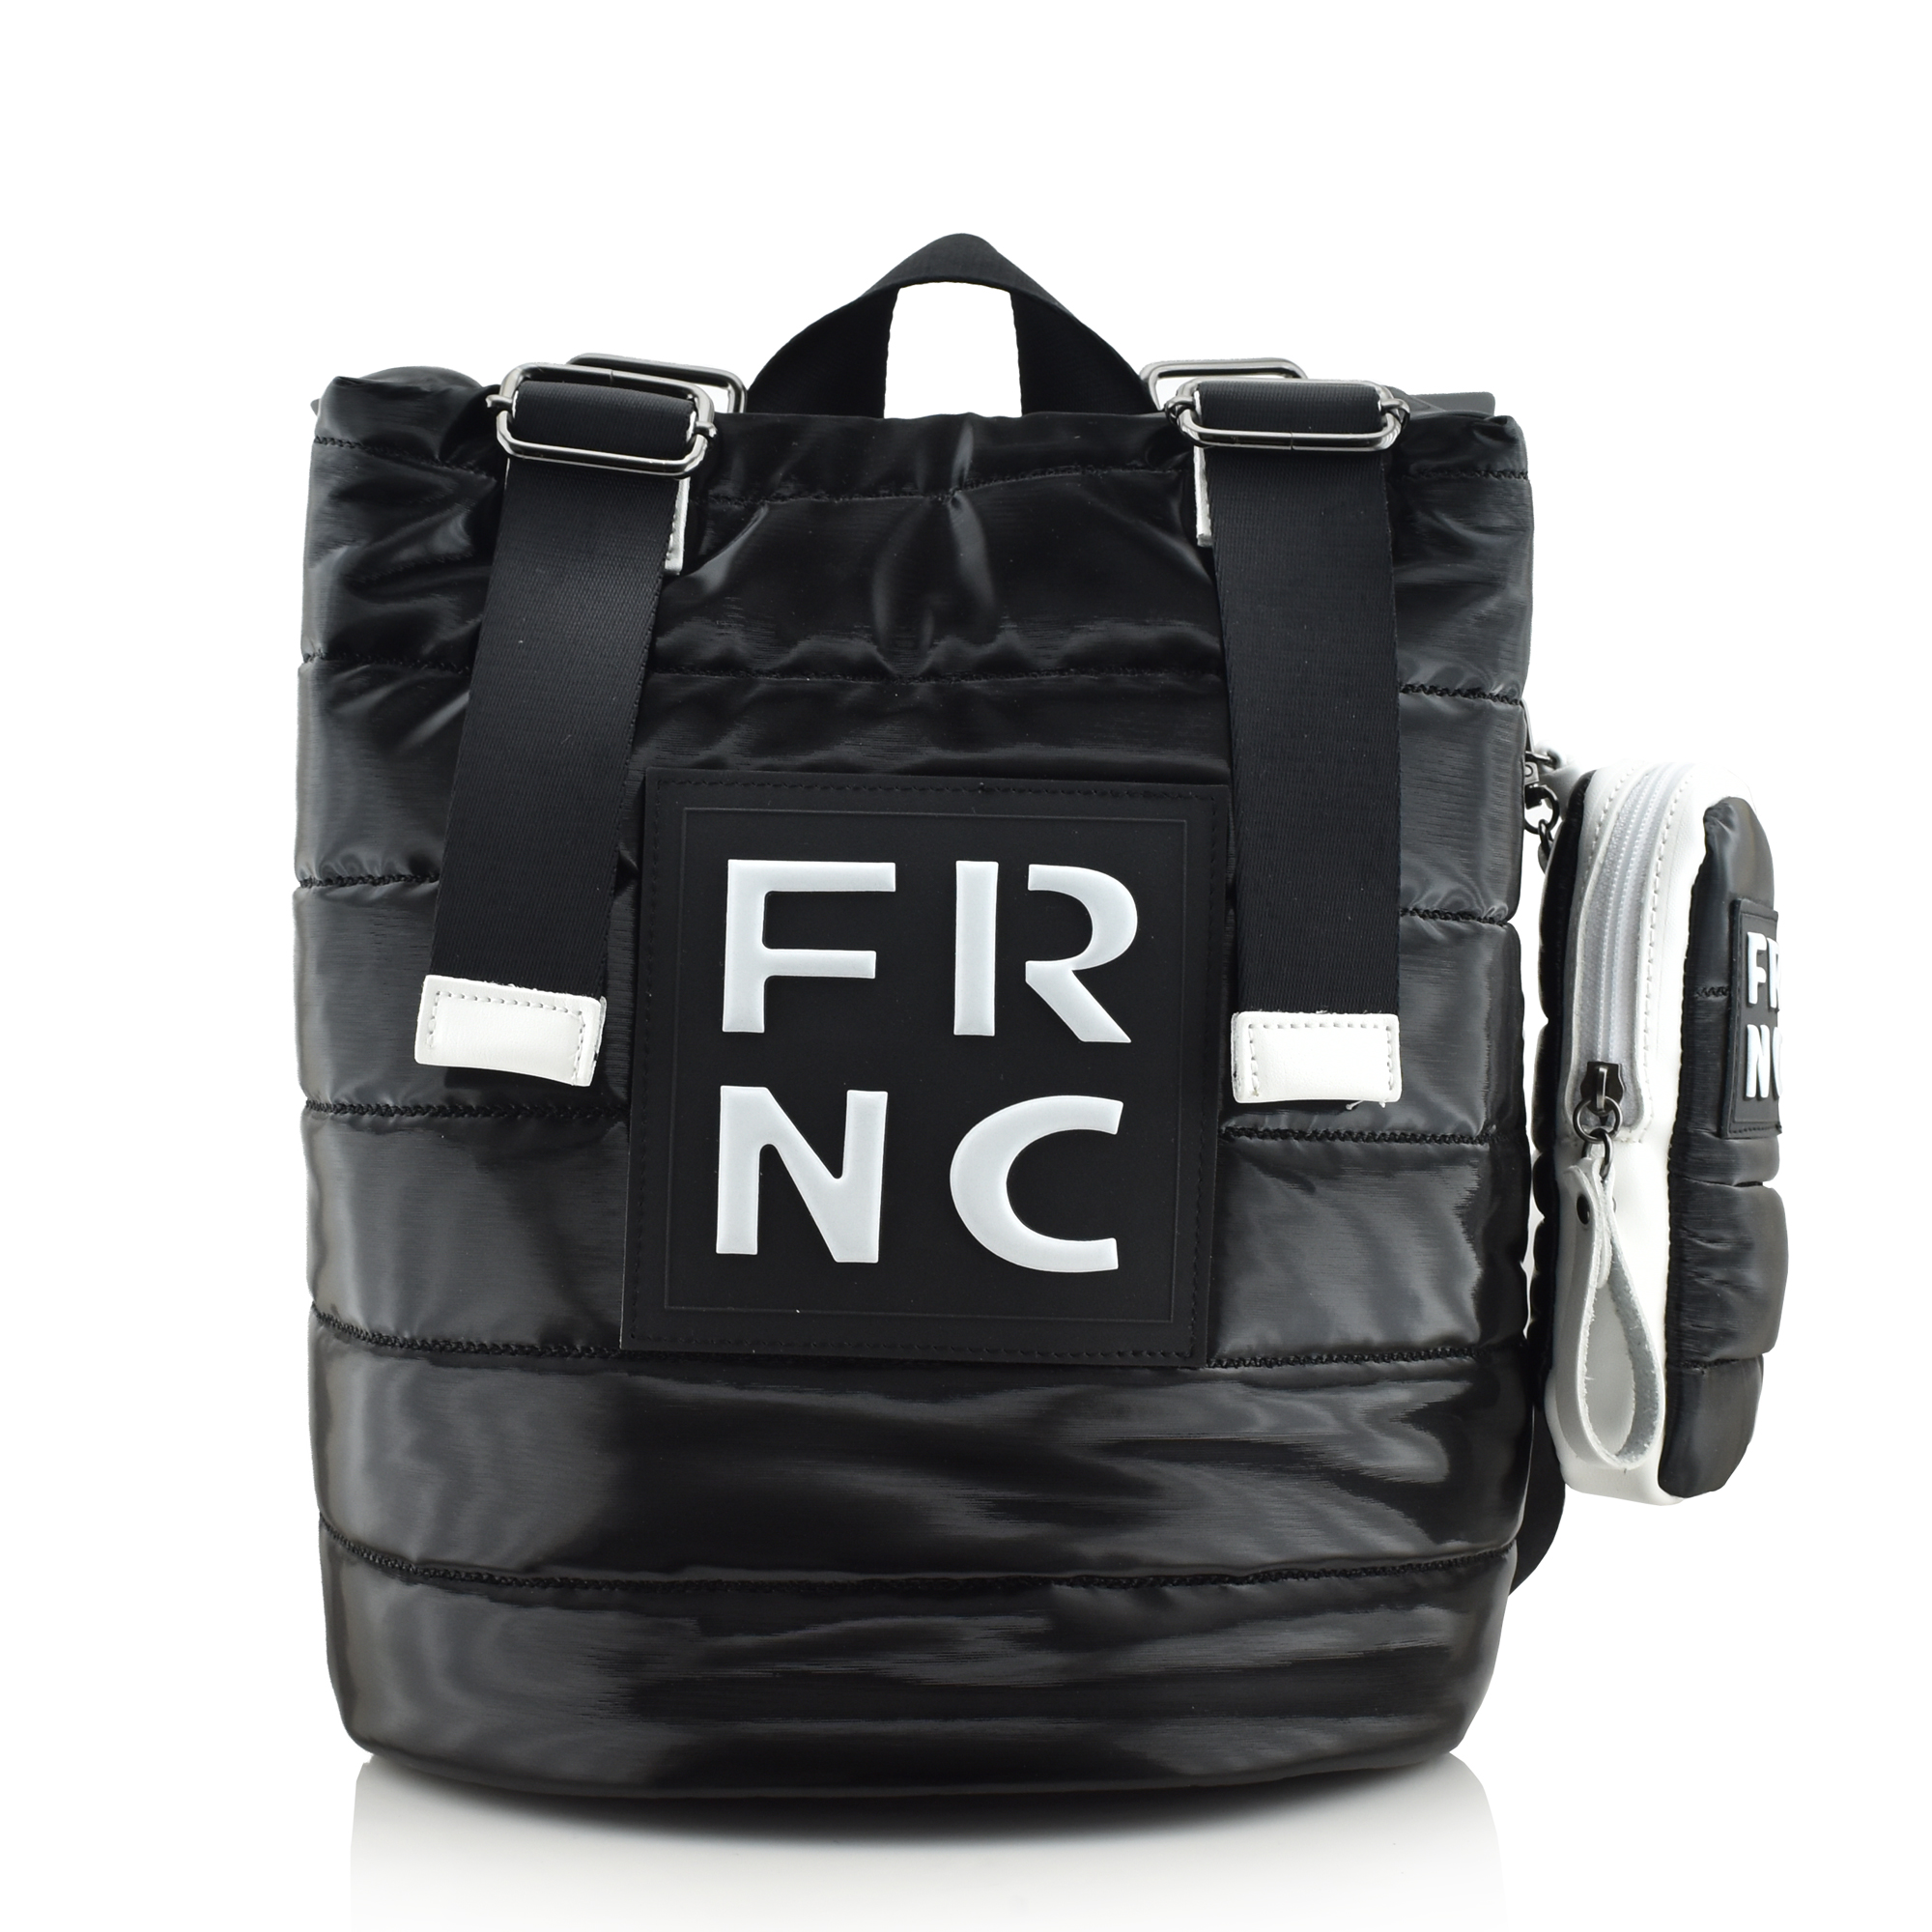 FRNC - FRANCESCO BIG SHINY BACKPACK - 2300 BLACK